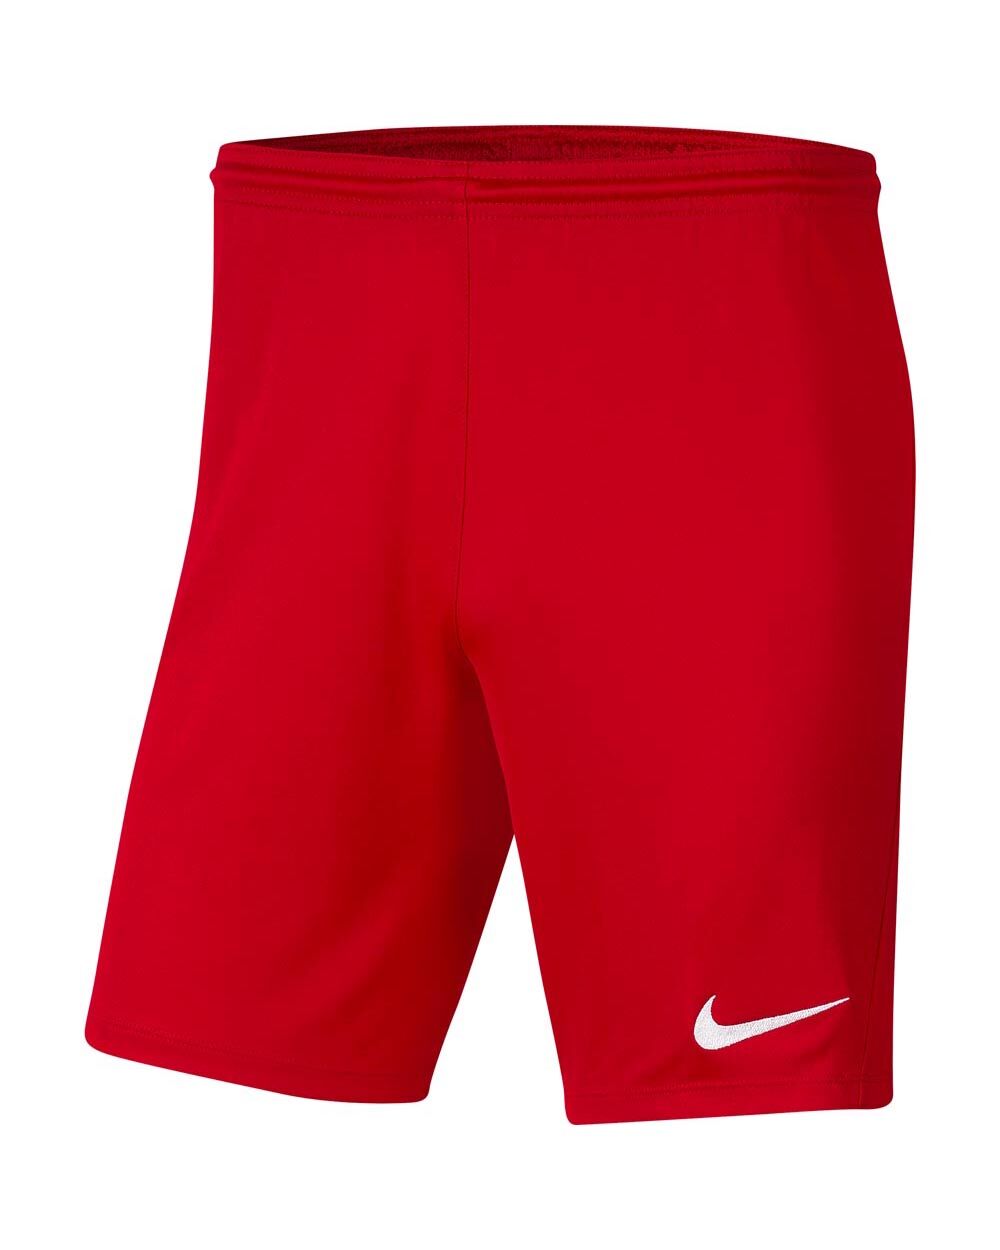 Pantalón corto Nike Park III Rojo Niño - BV6865-657